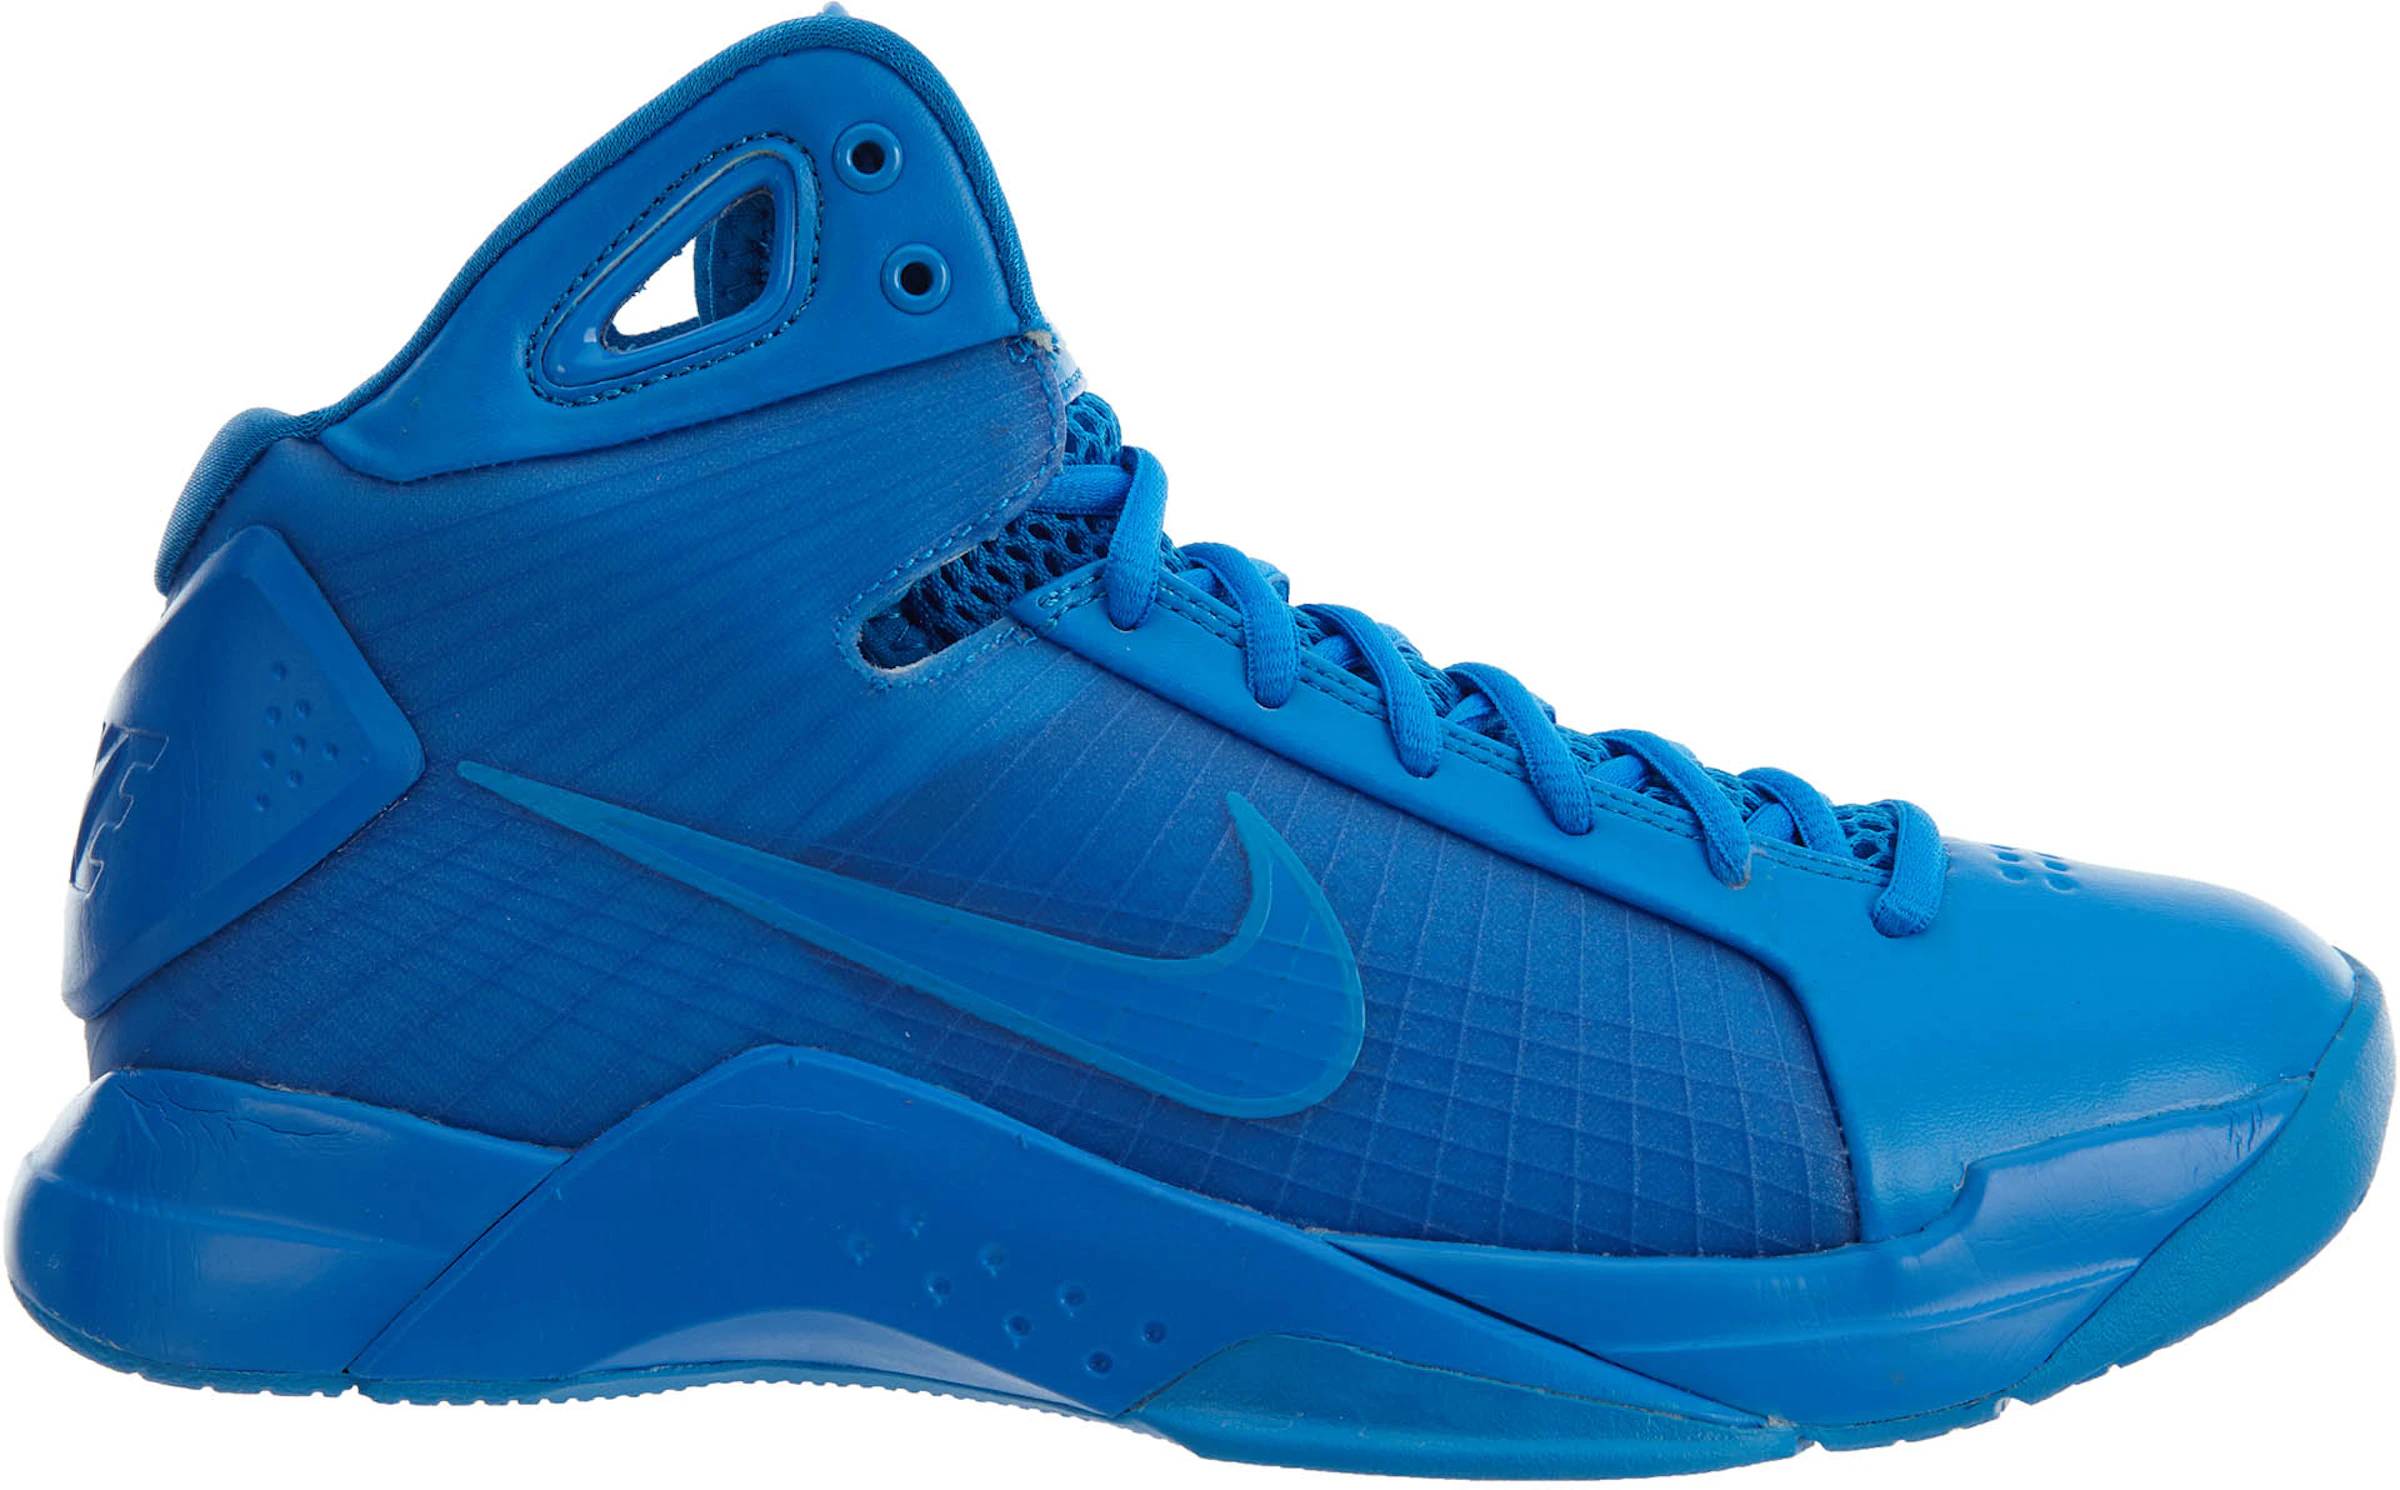 Compra Basketball Hyperdunk Calzado y sneakers nuevos StockX